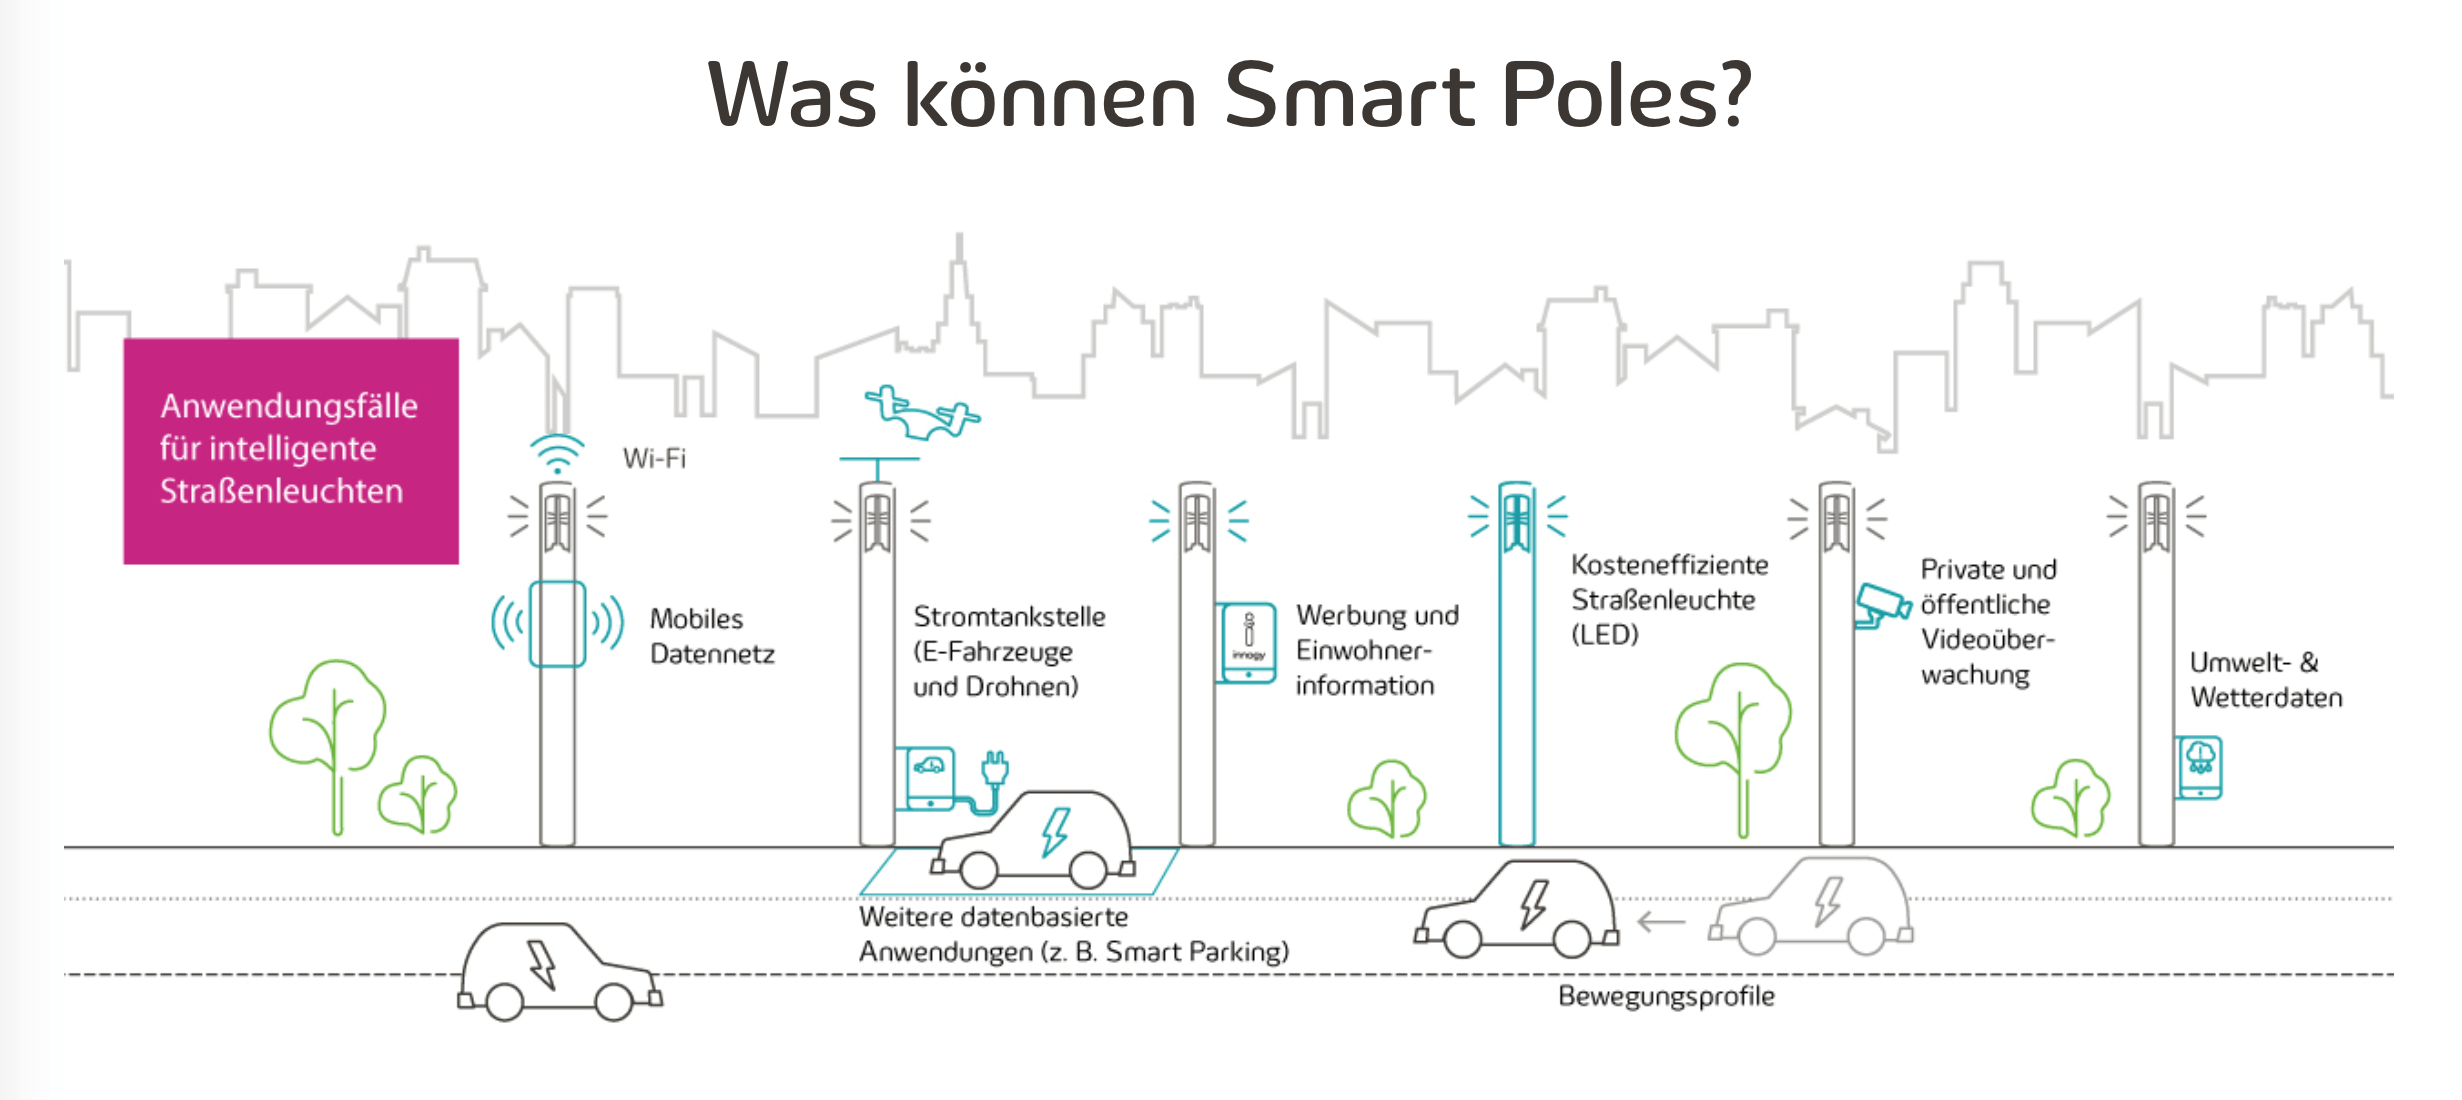 Was können Smart Poles?